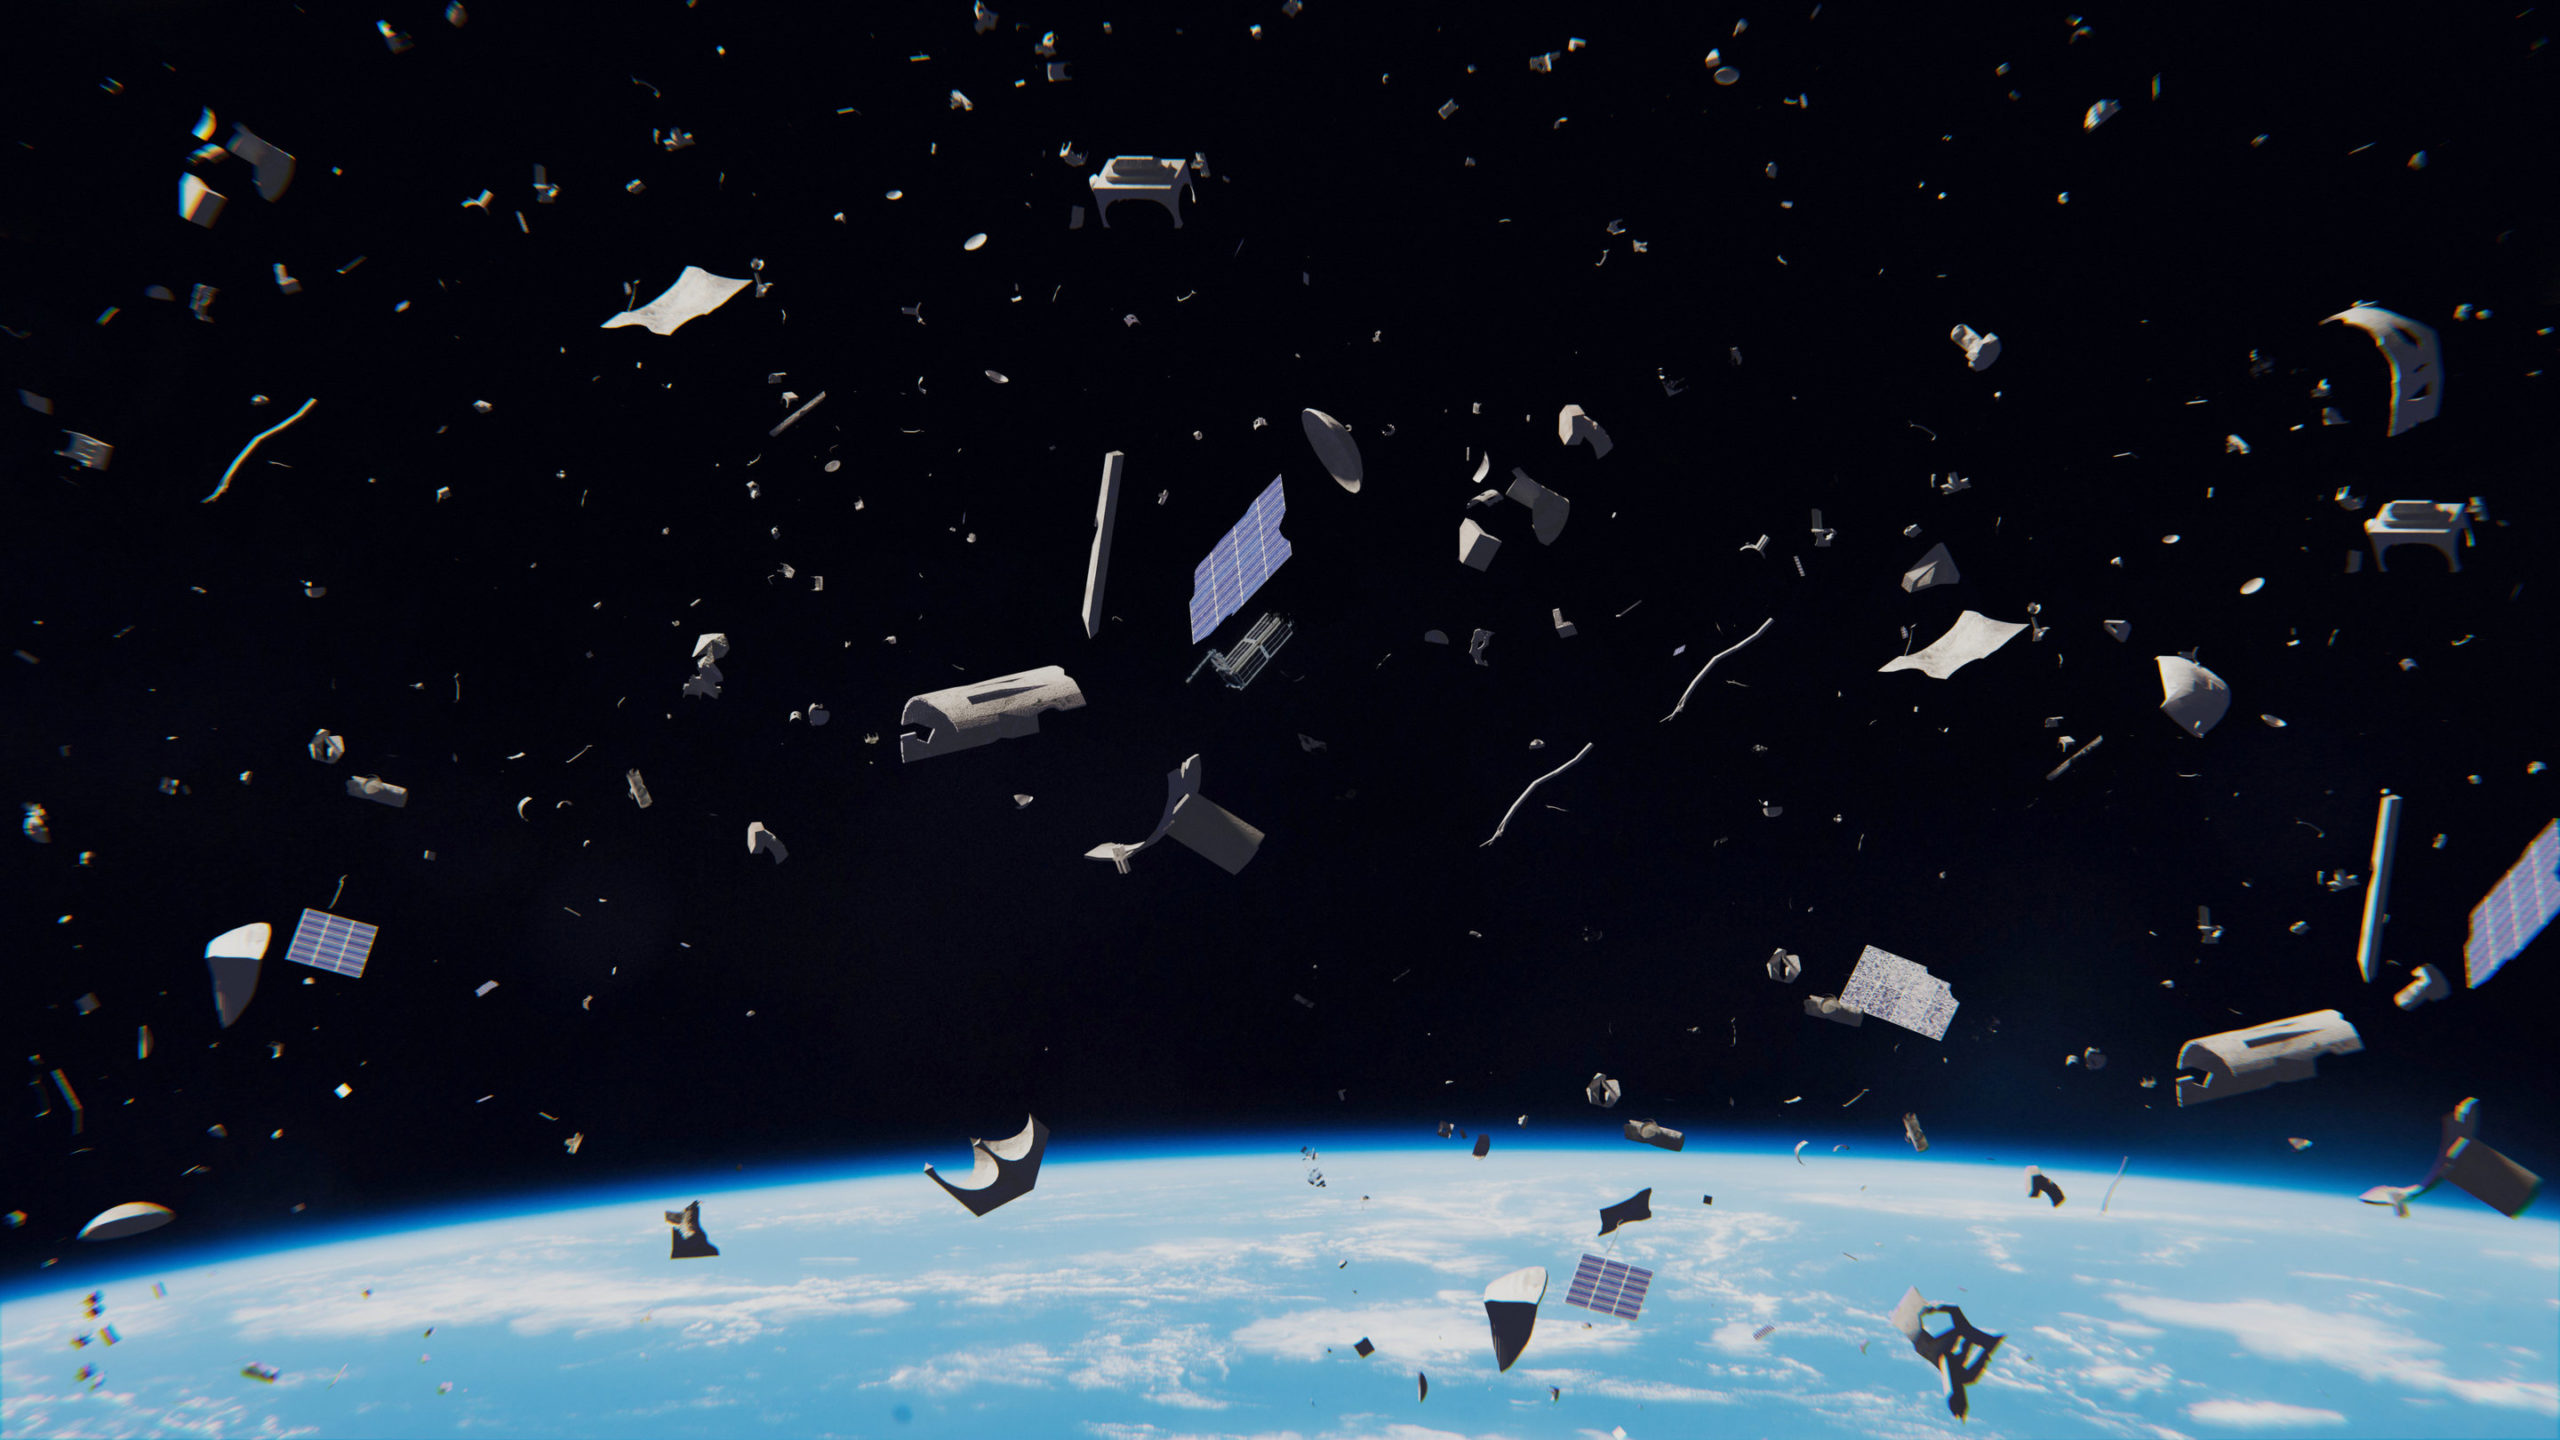 Space debris are rapidly increasingly